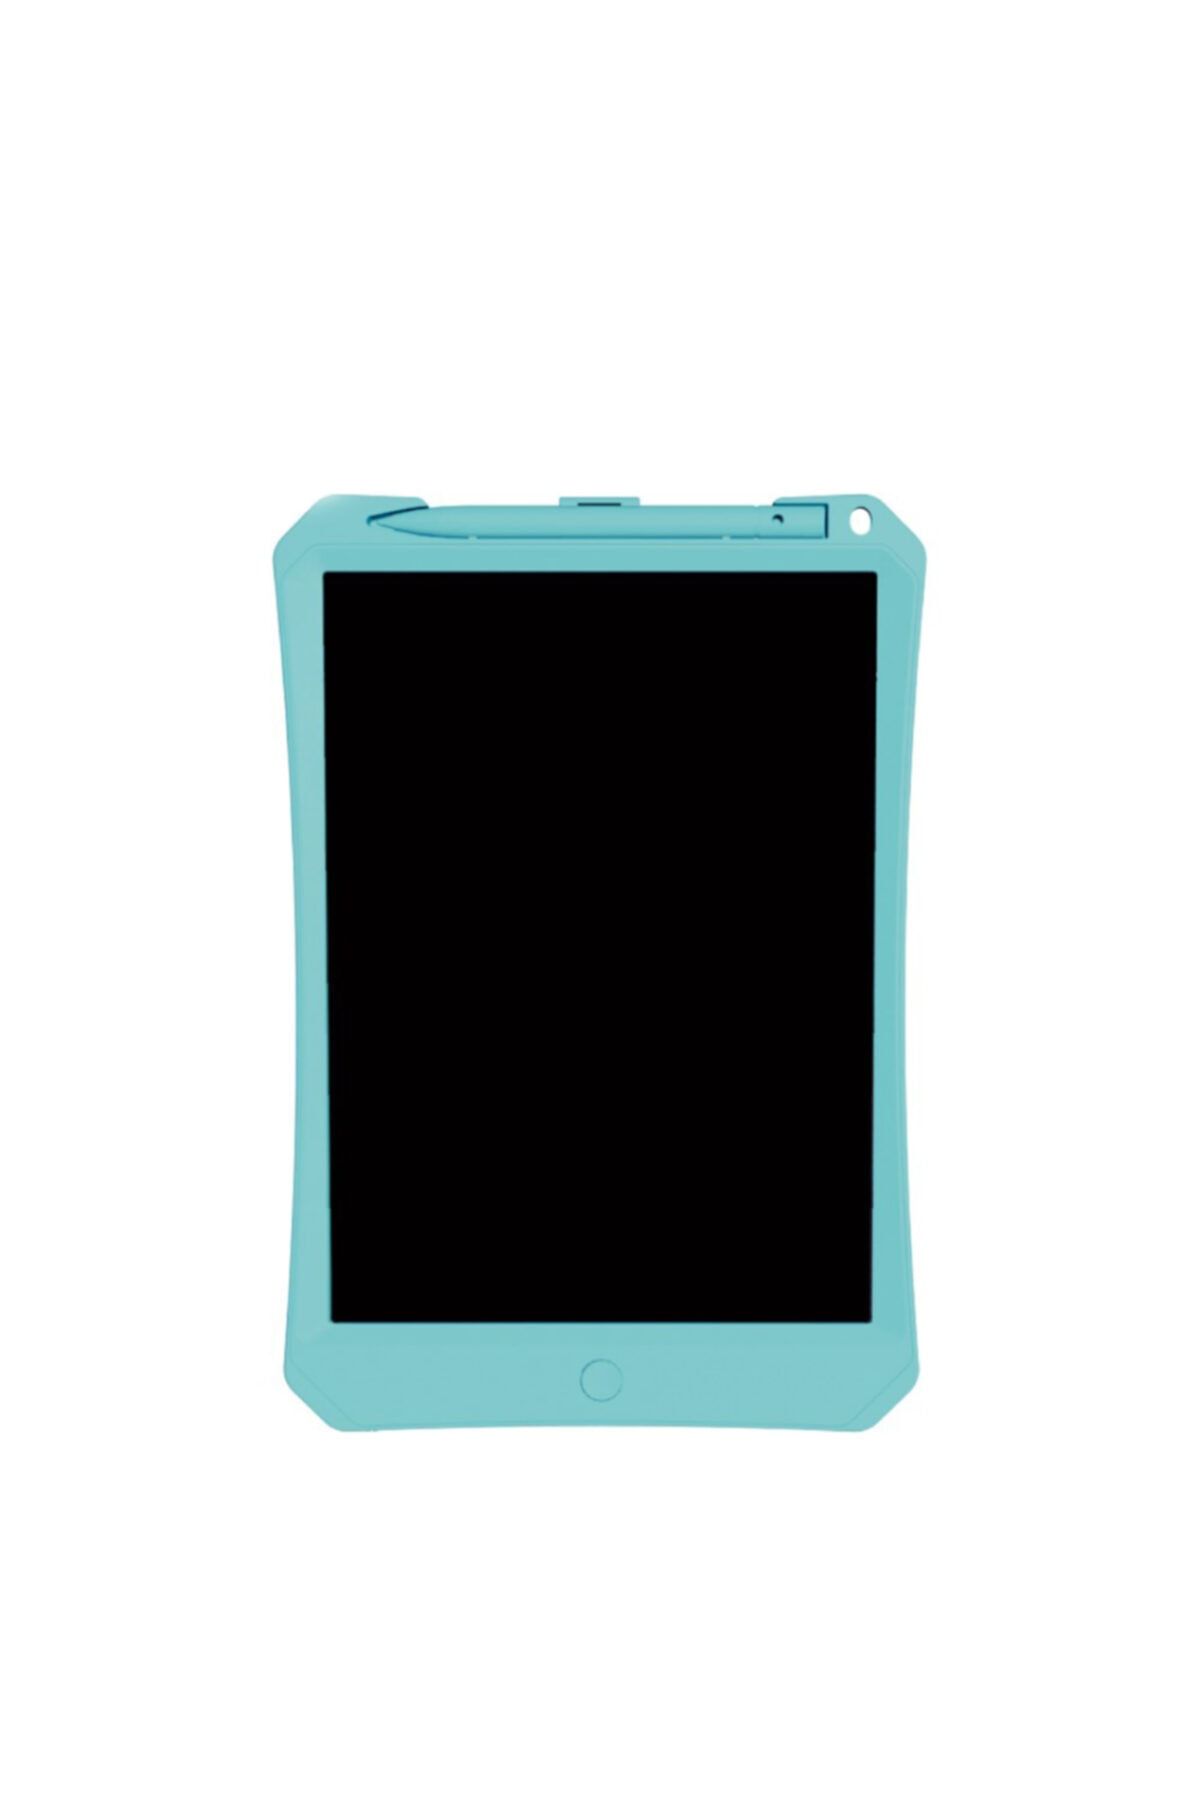 Xiaomi Wicue 11" Mavi Lcd Dijital Çizim Tableti